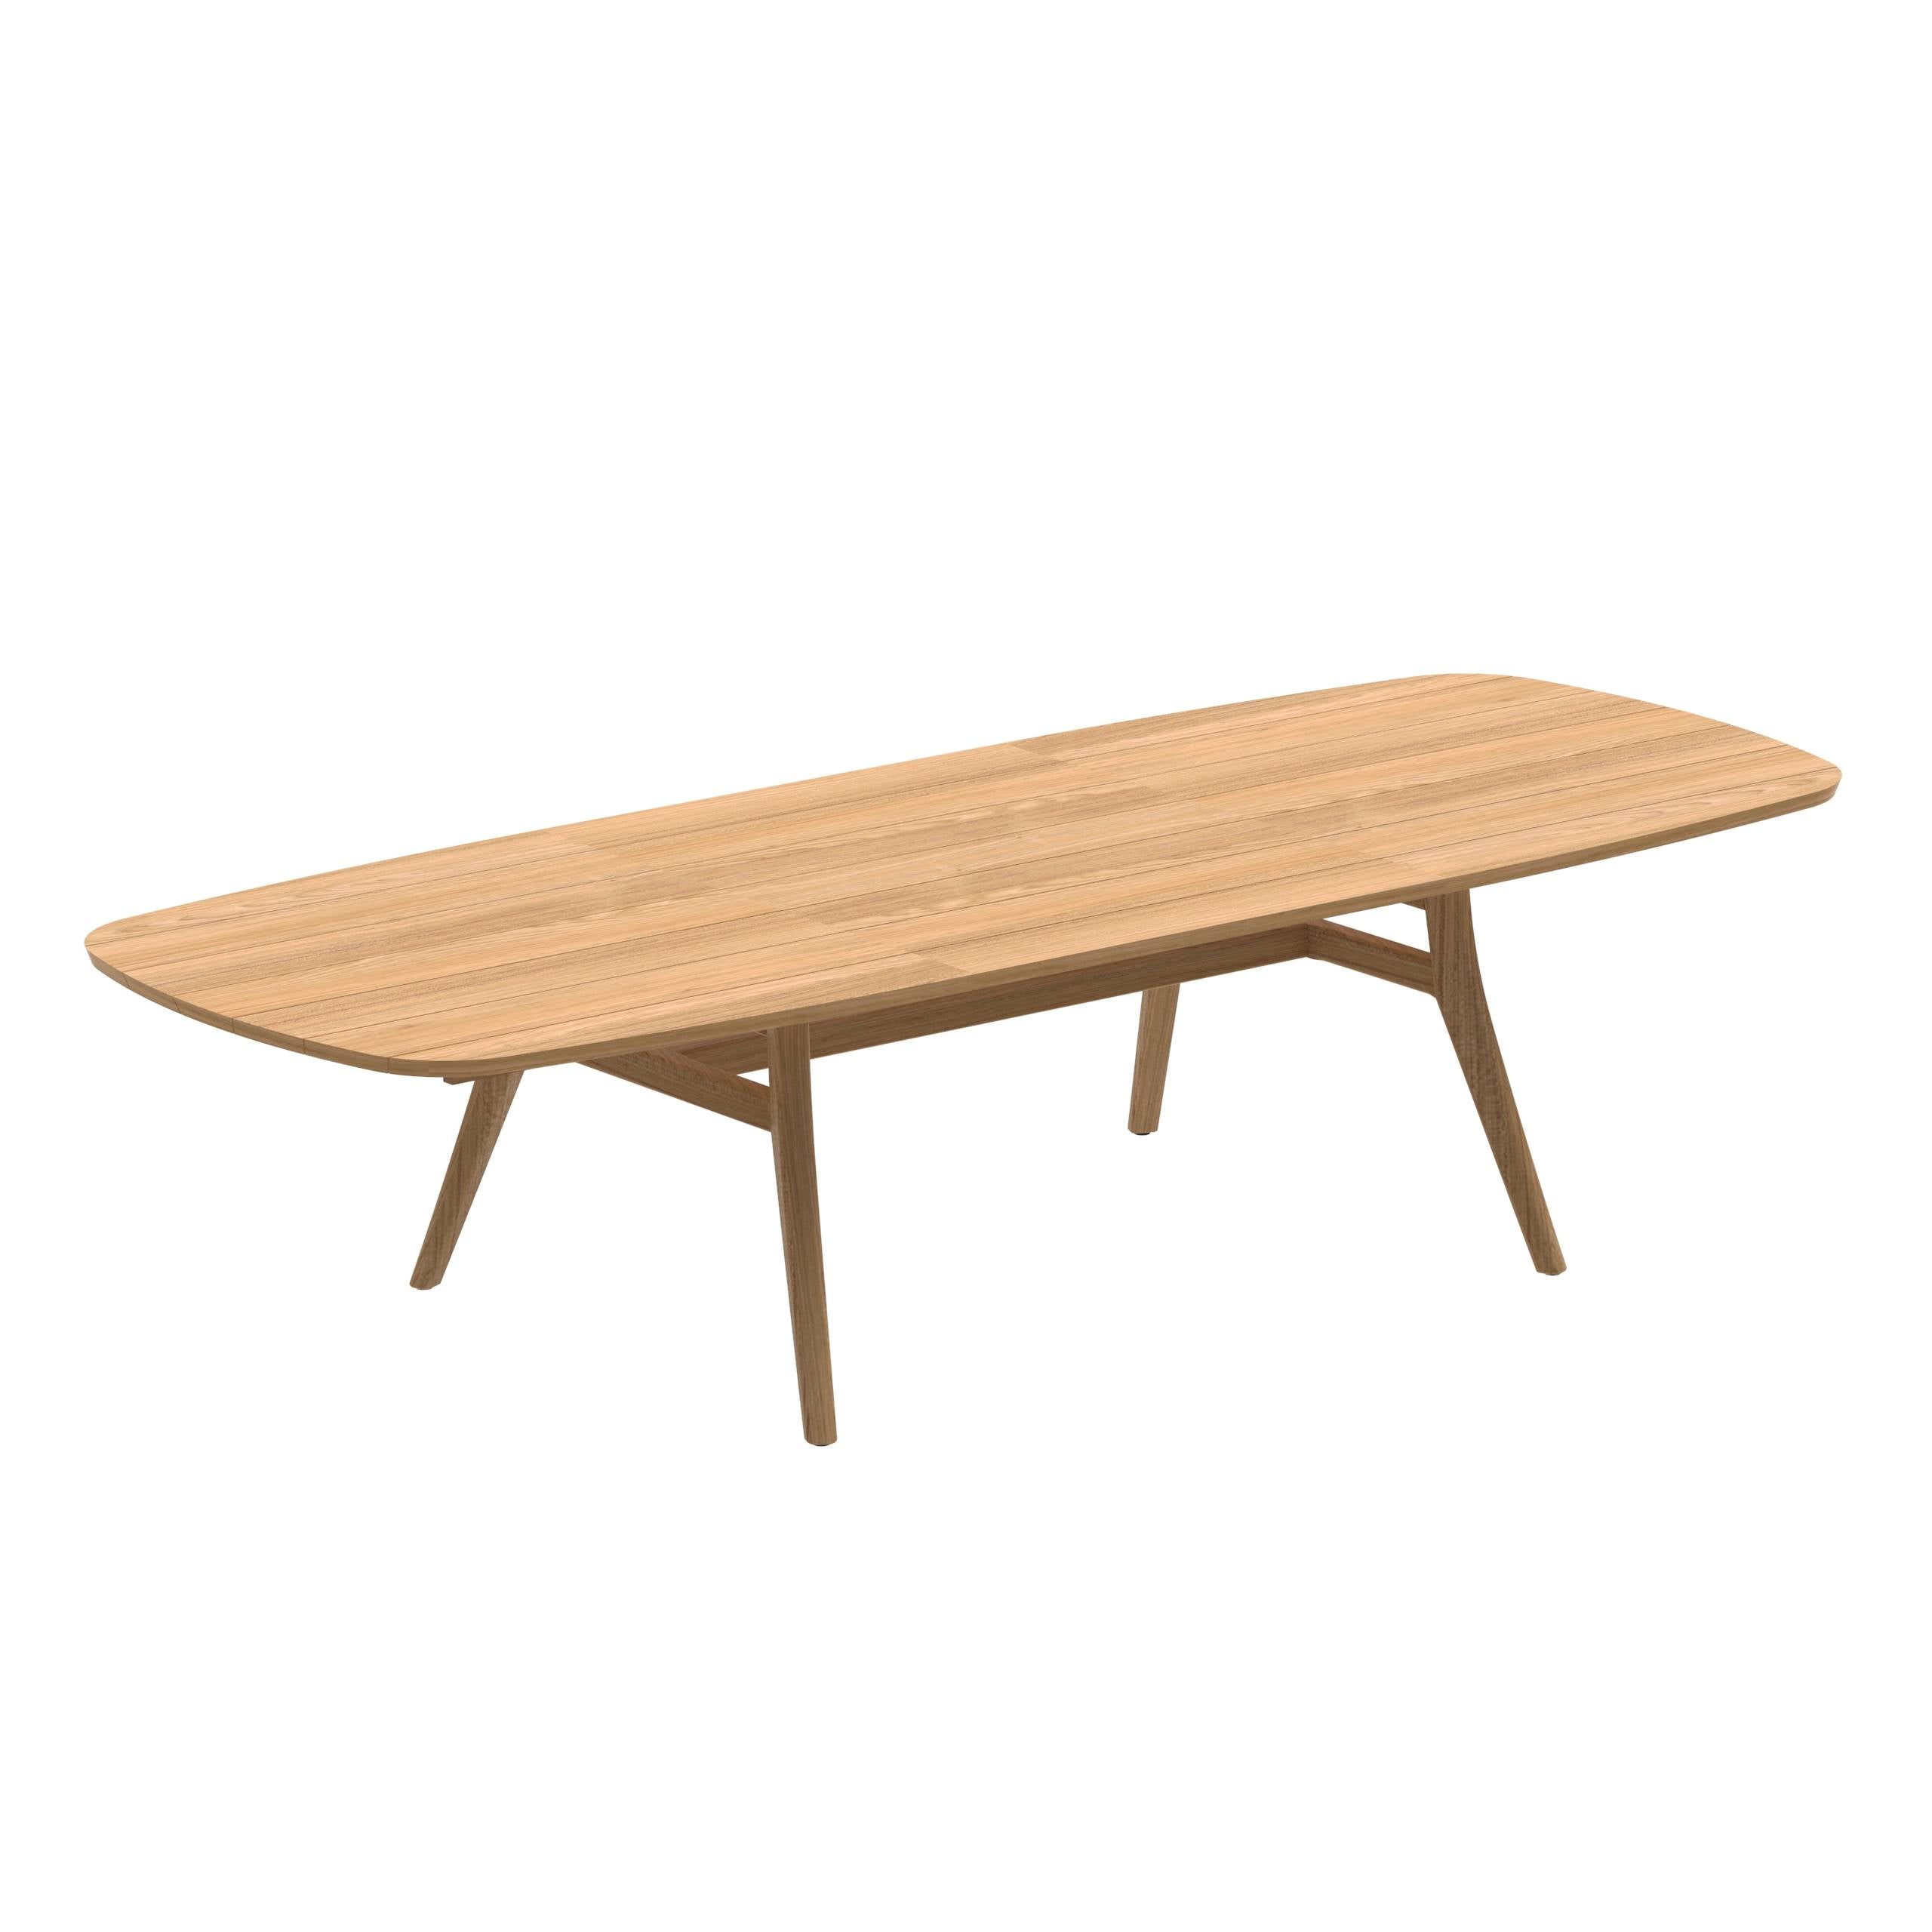 Zidiz Extendable Table 120-220/320cm Teak Legs Teak Top